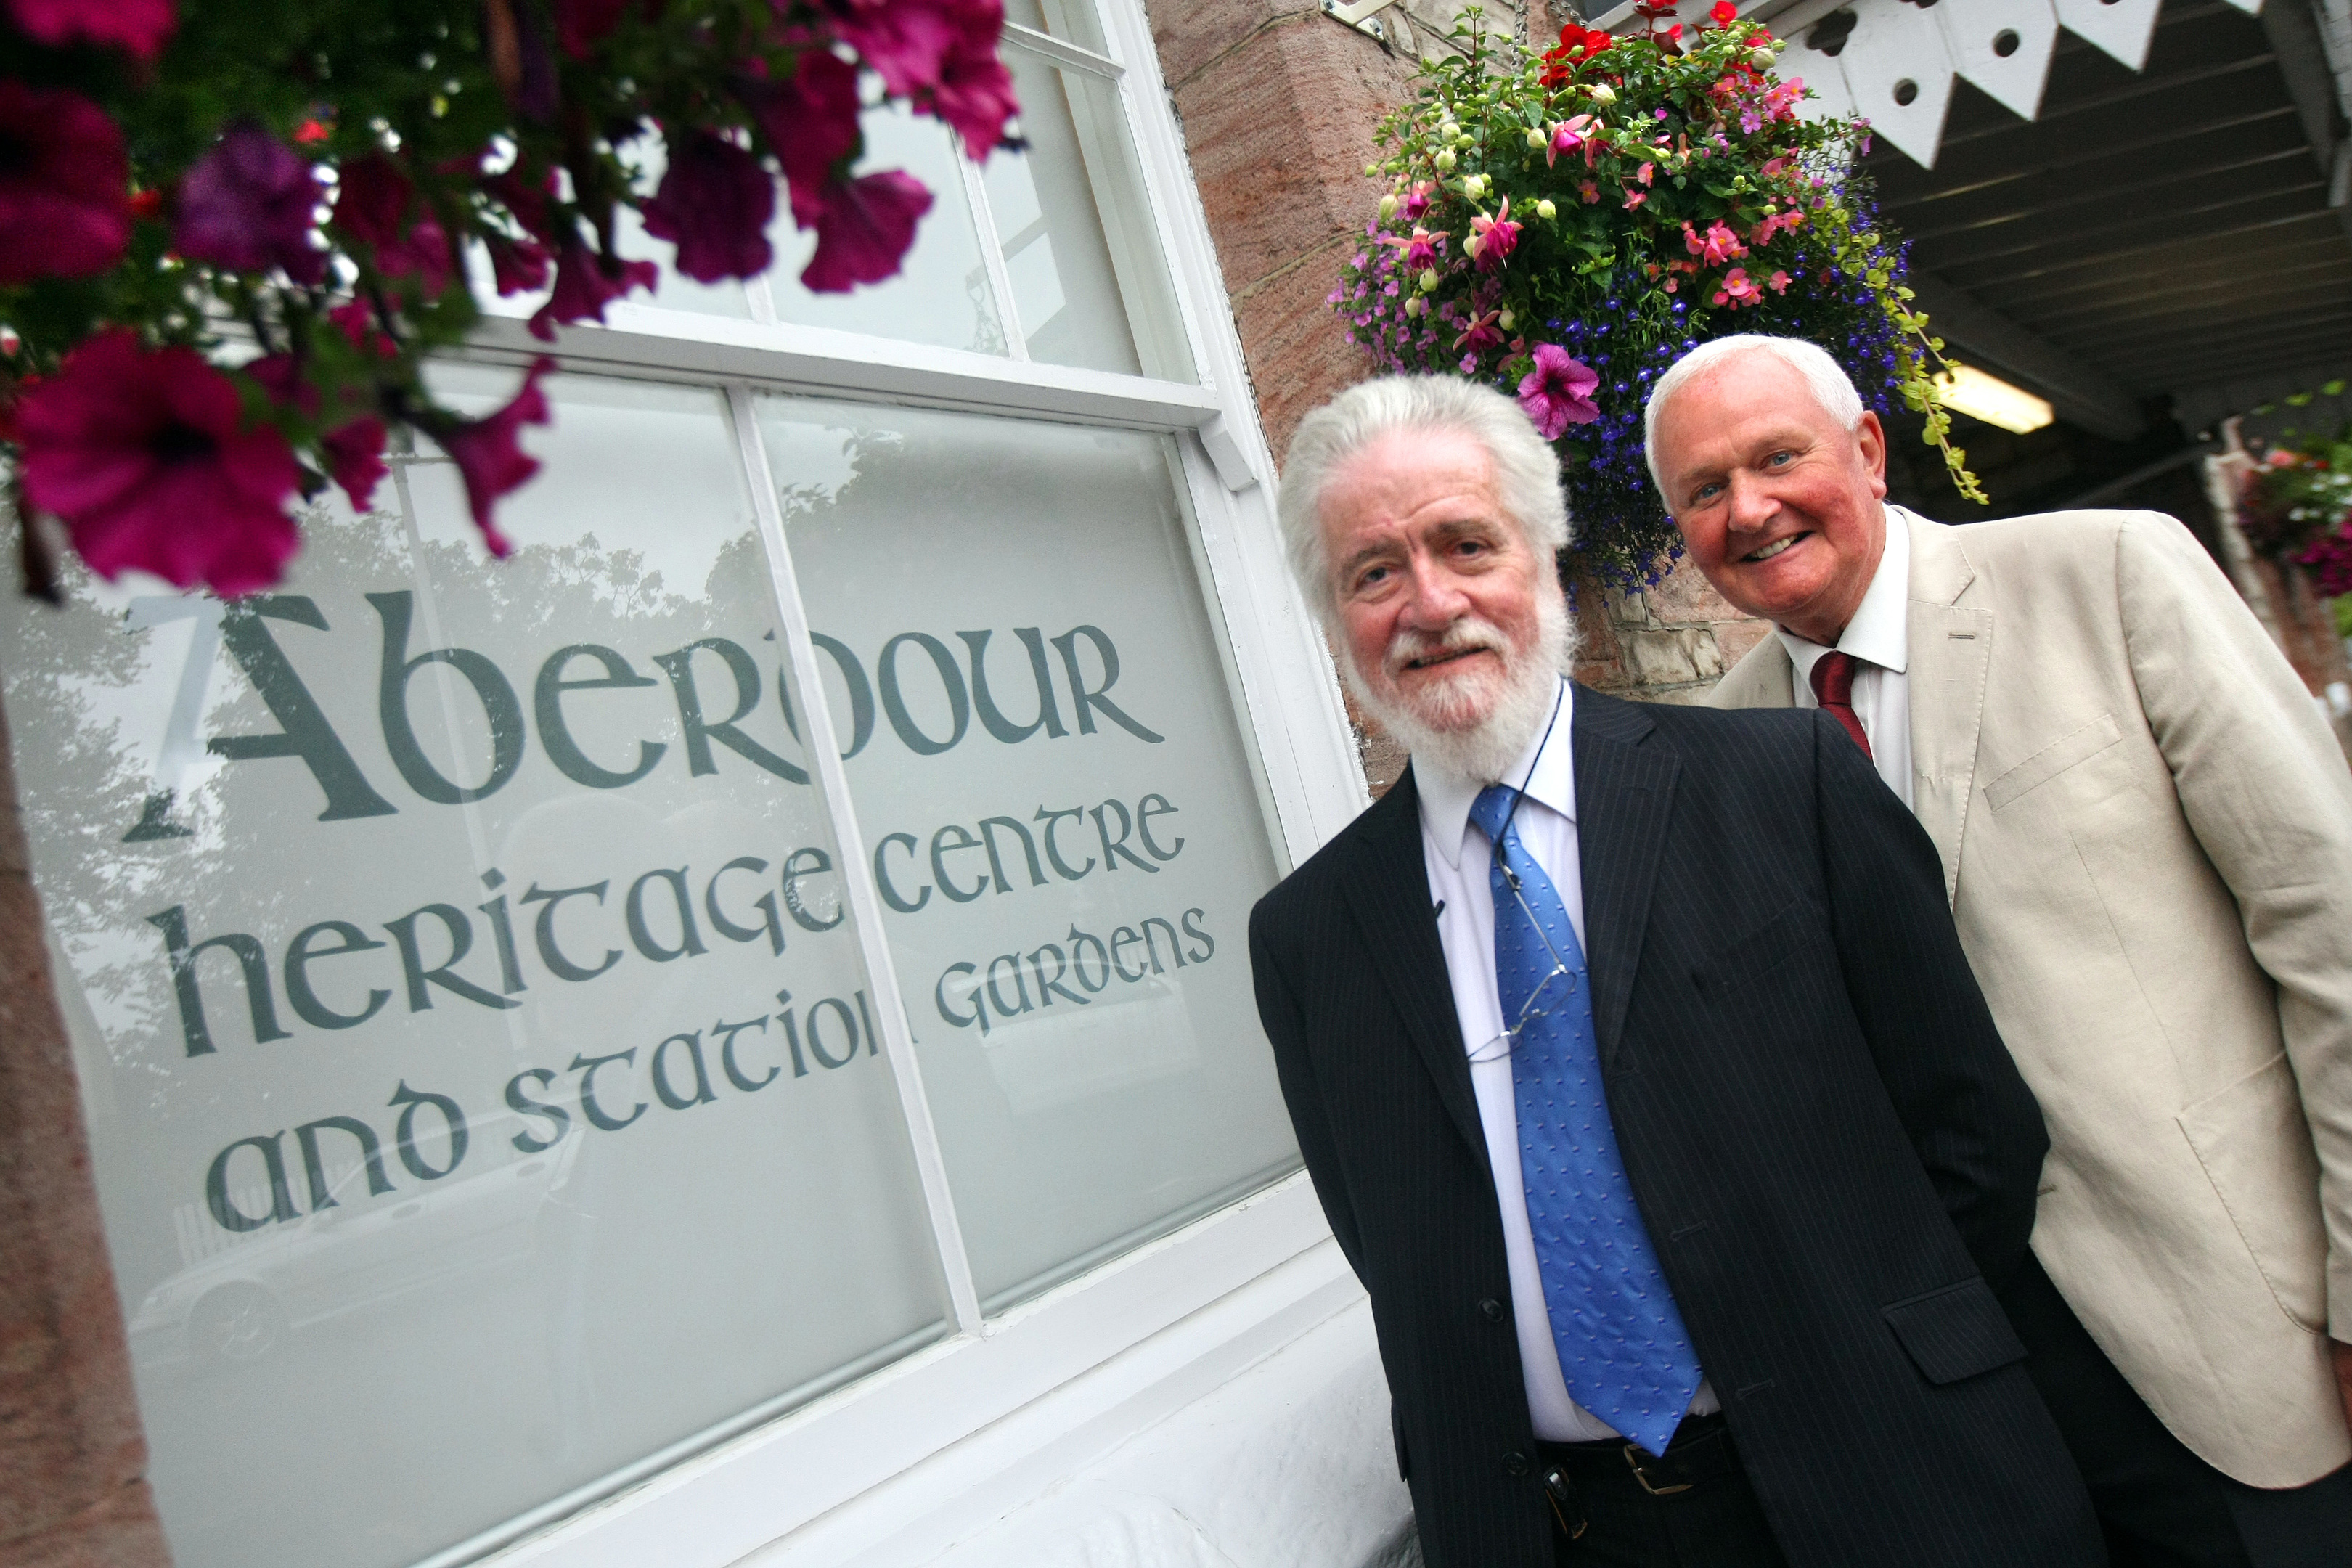 Arthur Lloyd and Bill Rennie in Aberdour Heritage Centre.